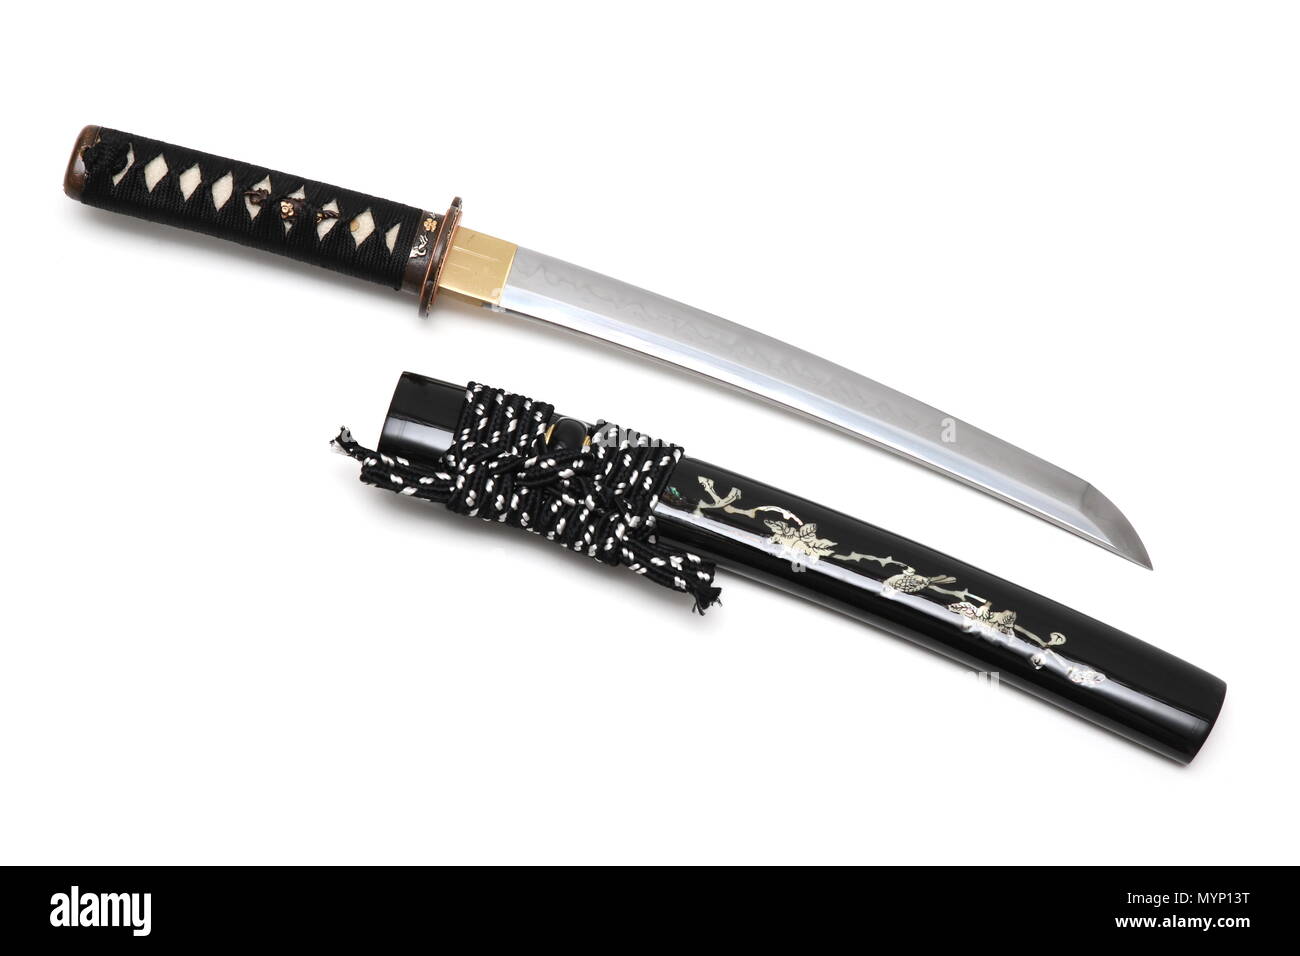 Aigushi o tanto breve spada giapponese con fodero isolato in uno sfondo  bianco Foto stock - Alamy